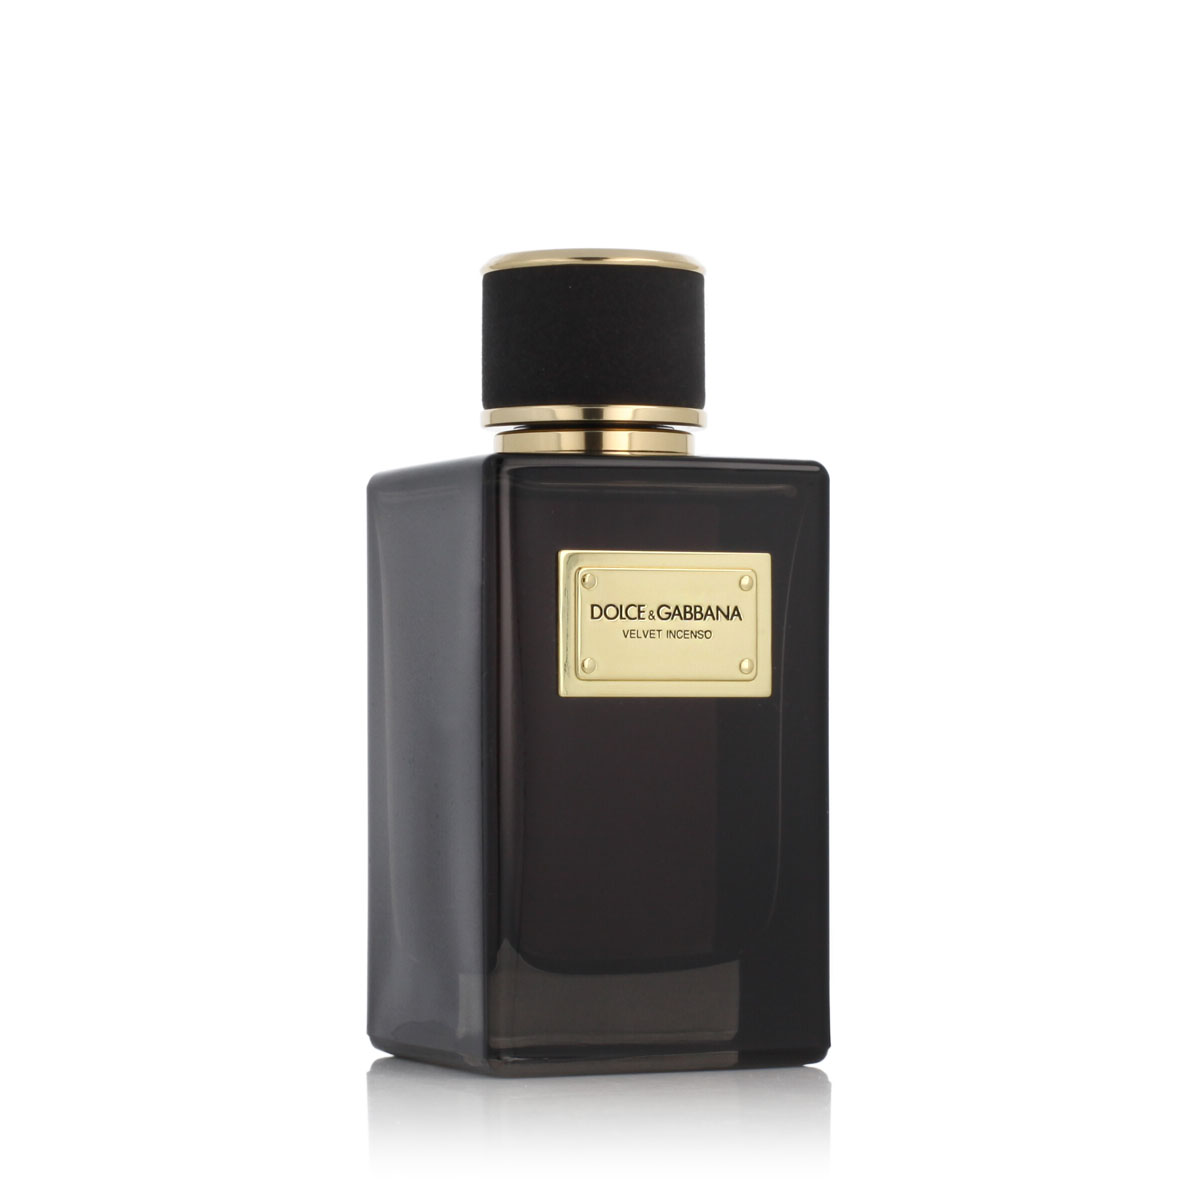 Dolce & Gabbana Velvet Incenso 5 ml kvepalų mėginukas (atomaizeris) Vyrams EDP